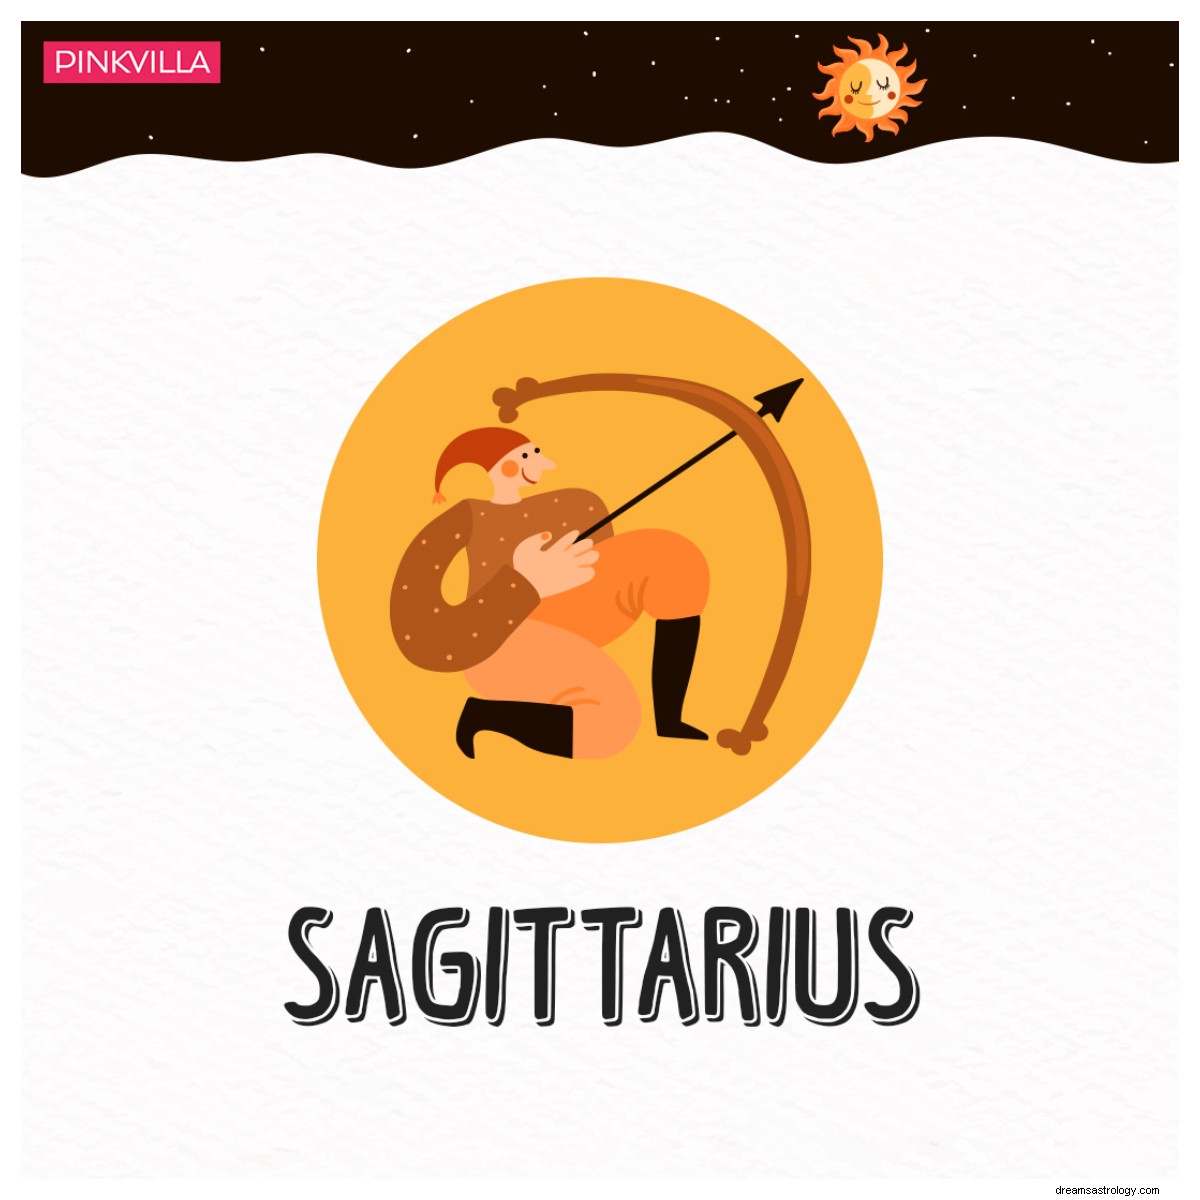 Dal Sagittario alla Bilancia:Segni zodiacali che escono dai contanti entro la metà del mese 